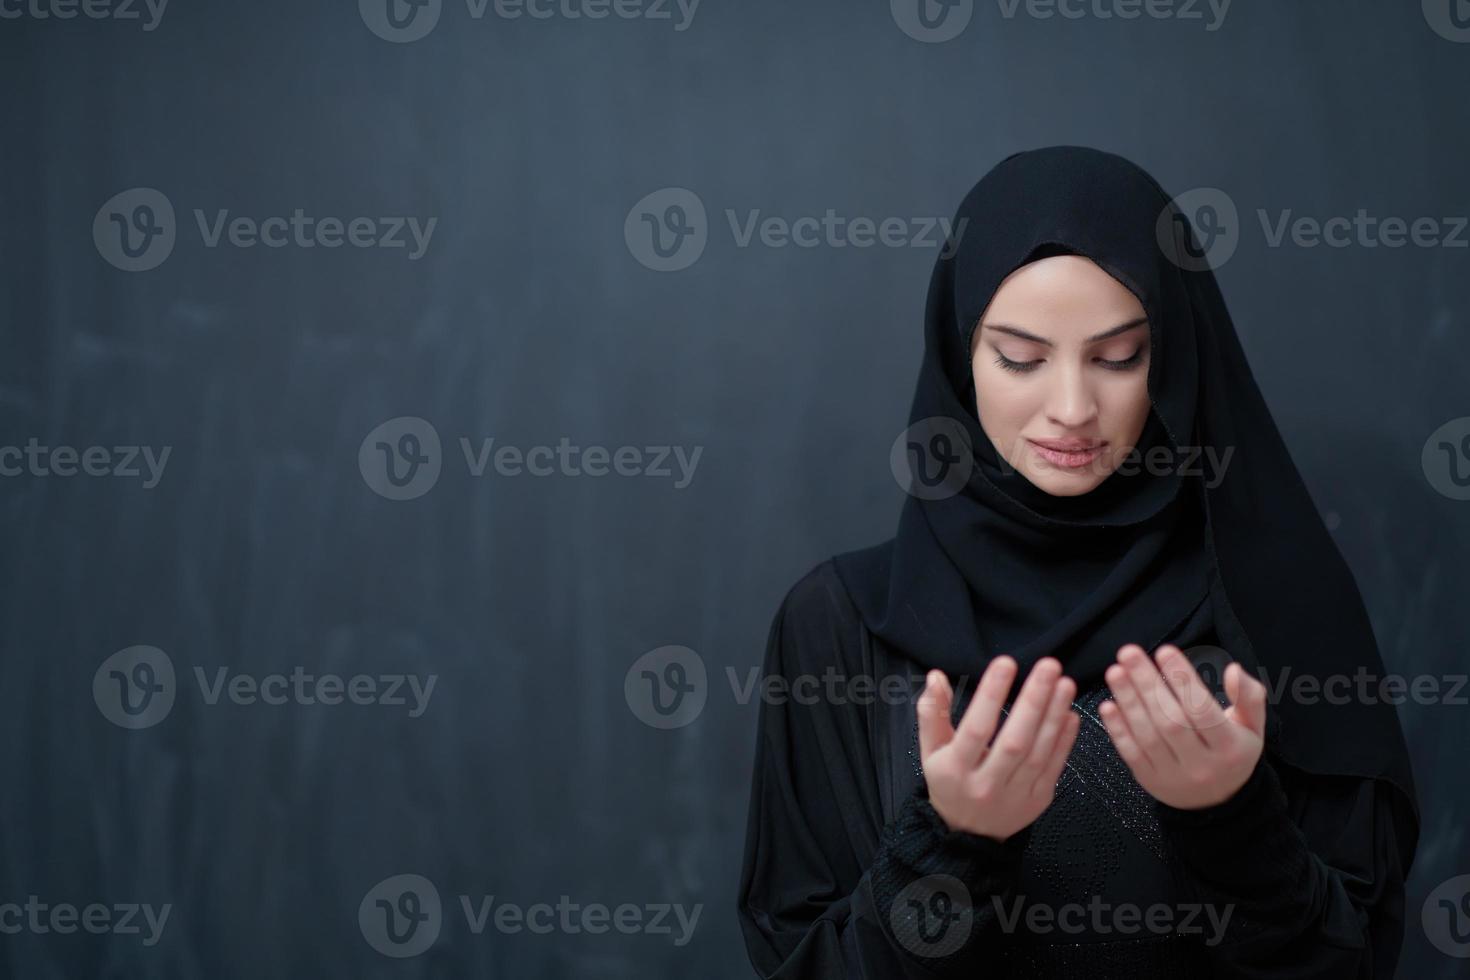 portret van jong moslim vrouw maken dua foto